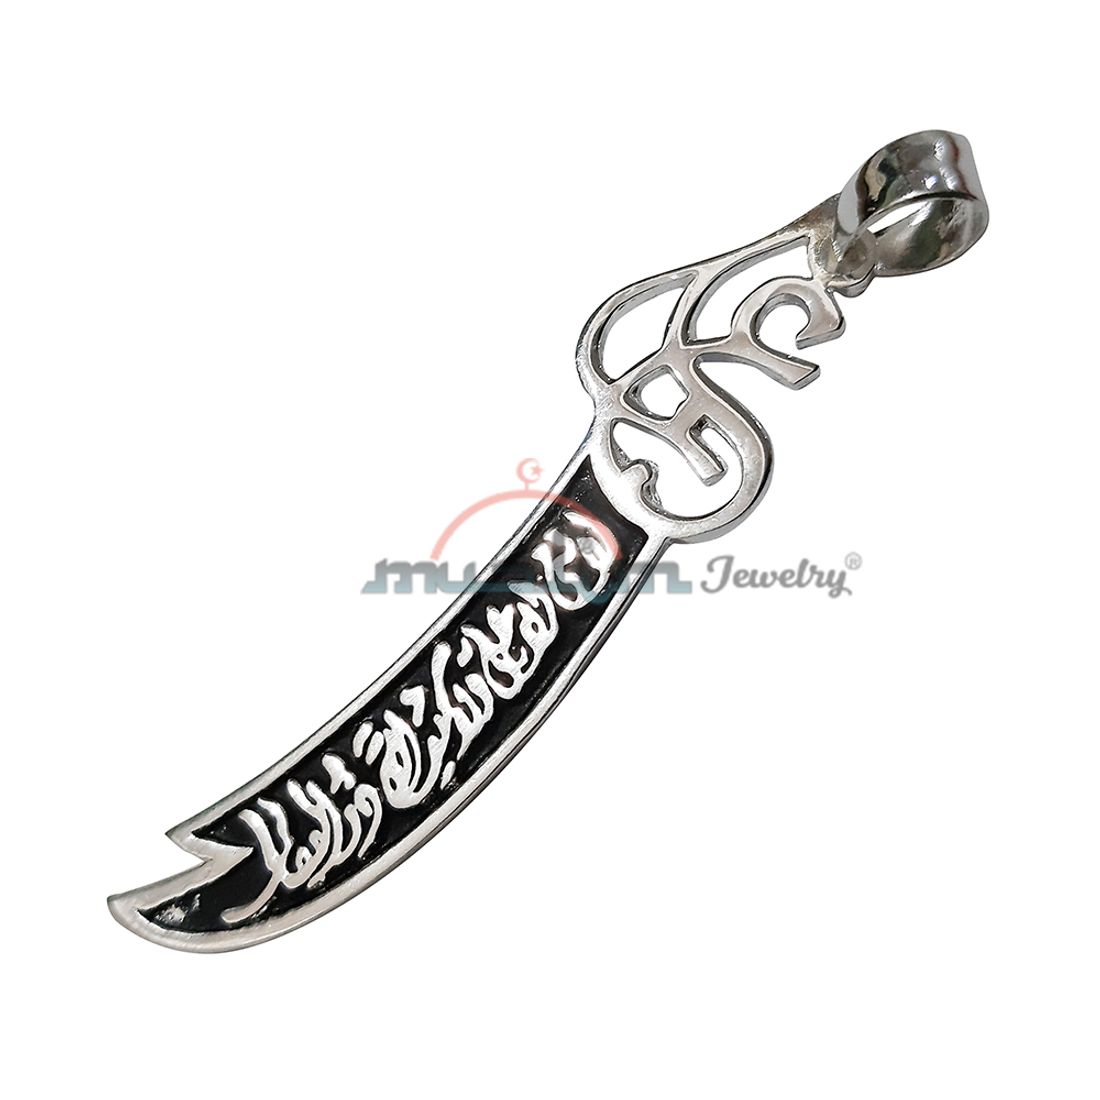 Medium Silver Arabic “La Fata Ila Ali” Double Blade Sword Pendant